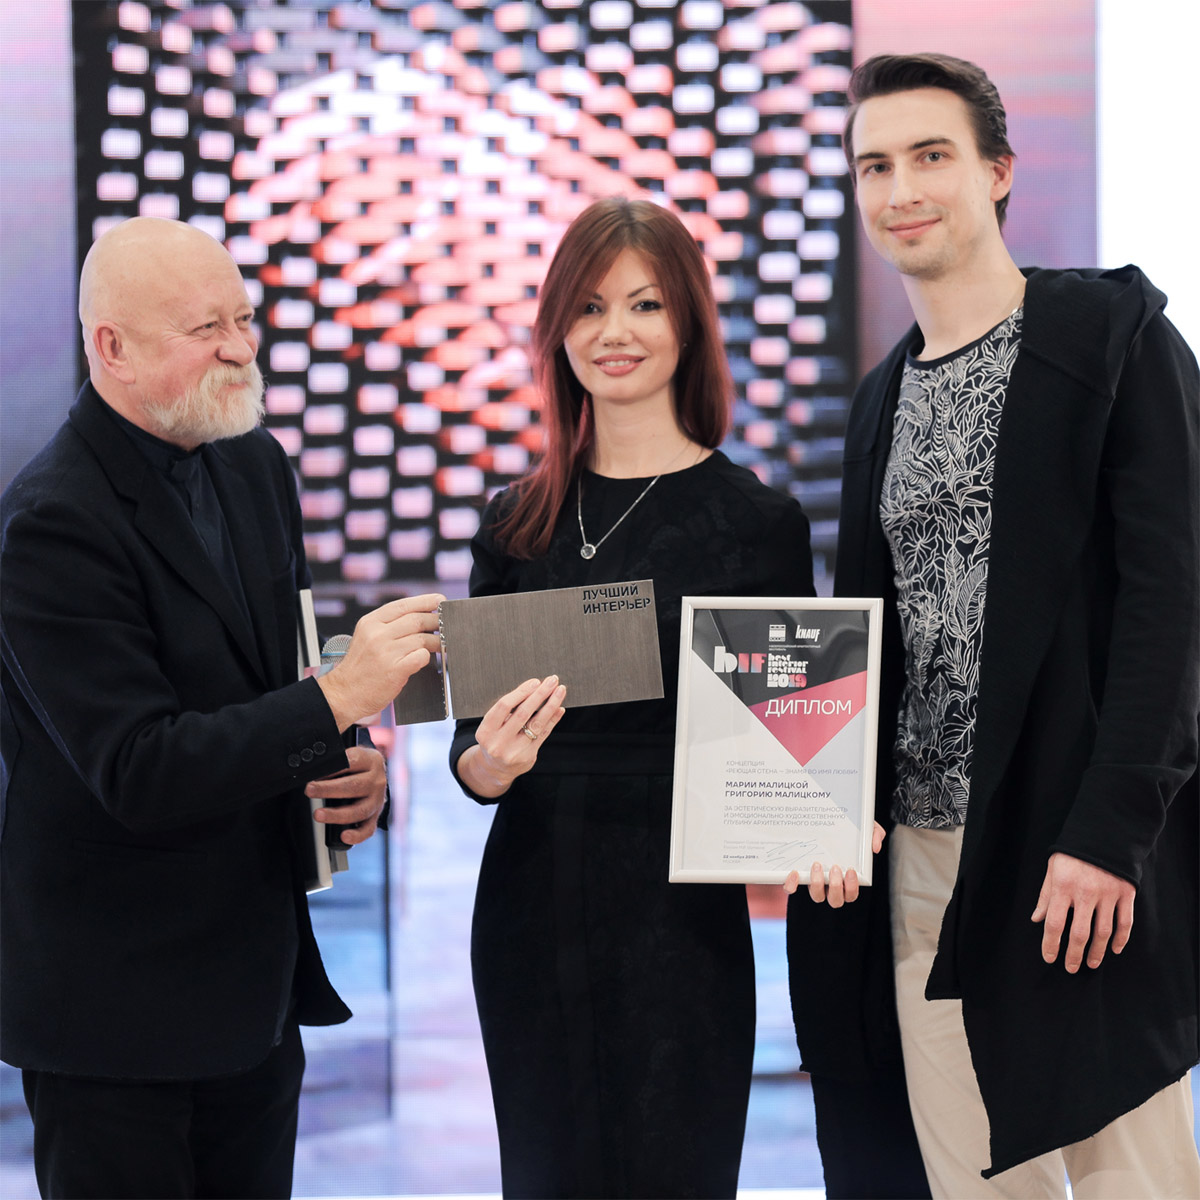 Н. Шумаков вручает Малицкий награду  за инсталляцию "Реющая стена"